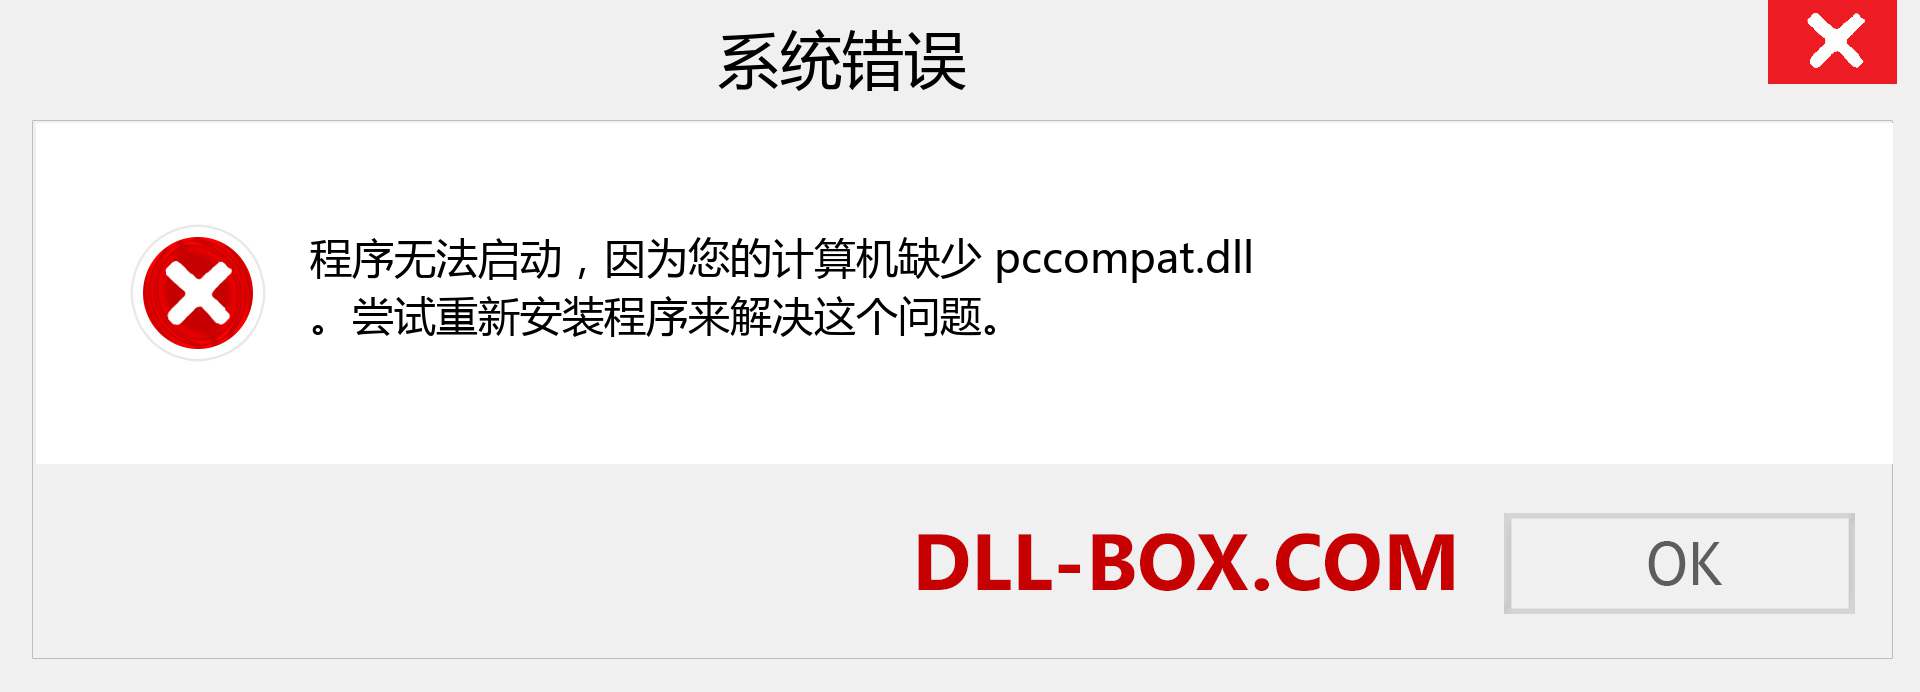 pccompat.dll 文件丢失？。 适用于 Windows 7、8、10 的下载 - 修复 Windows、照片、图像上的 pccompat dll 丢失错误